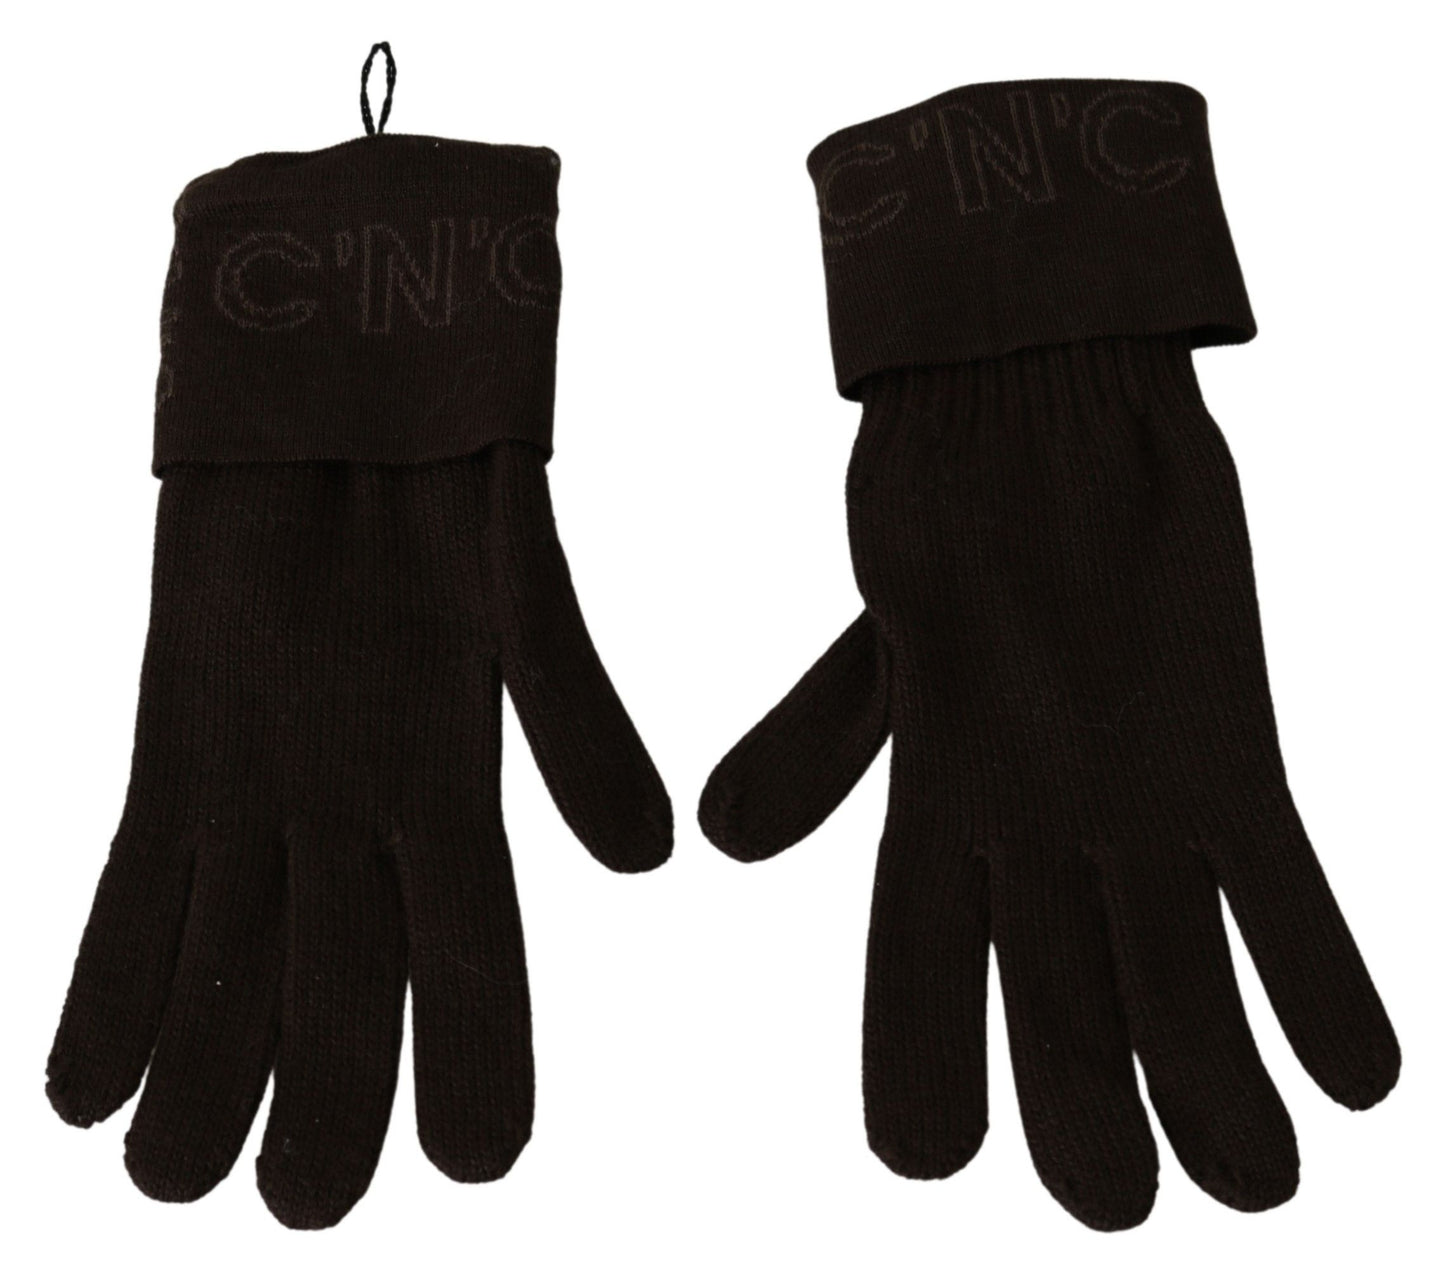 Costume National Brown Wool tricoté des gants de longueur de poignet une taille